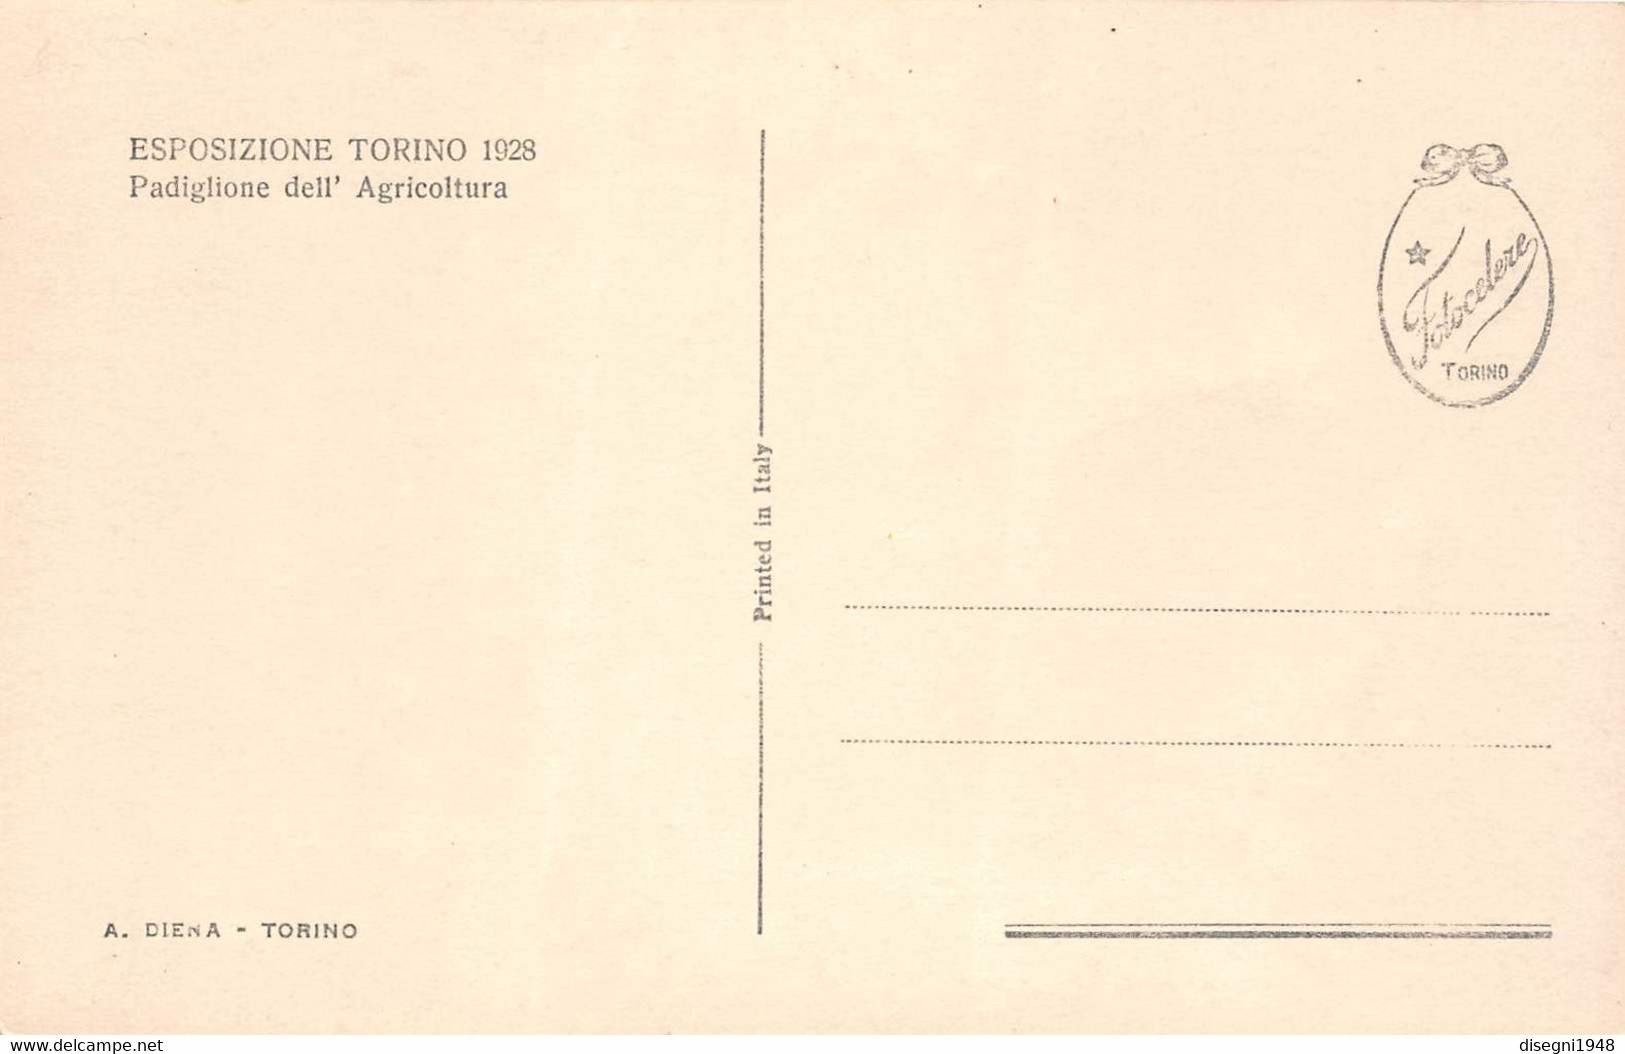 09886 "ESPOSIZIONE TORINO 1928 - PADIGLIONE DELL'AGRICOLTURA" ARCHITETT. DEL '900. ANIMATA.CART. ORIG. NON SPED. - Expositions